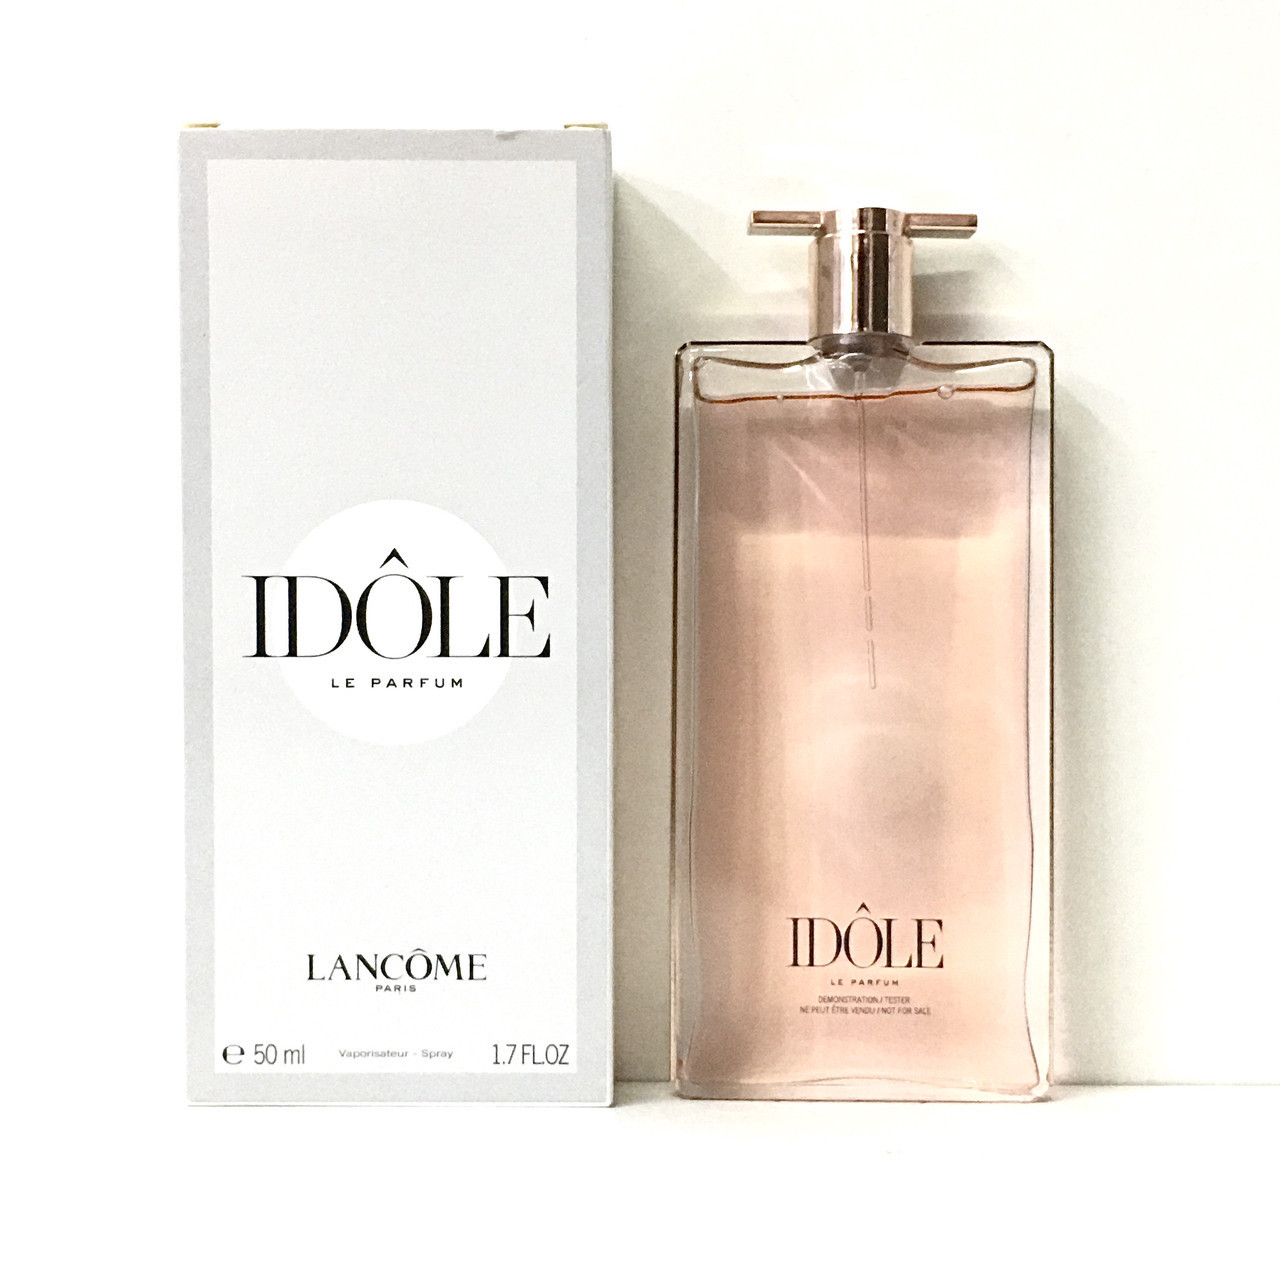 Духи Ланком Идол ТЕСТЕР 50мл LANCOME Idole Le Parfum парфюмированная вода ,  стойкий шлейфовый цветочный аромат, цена 1410 грн - Prom.ua (ID#1045618077)